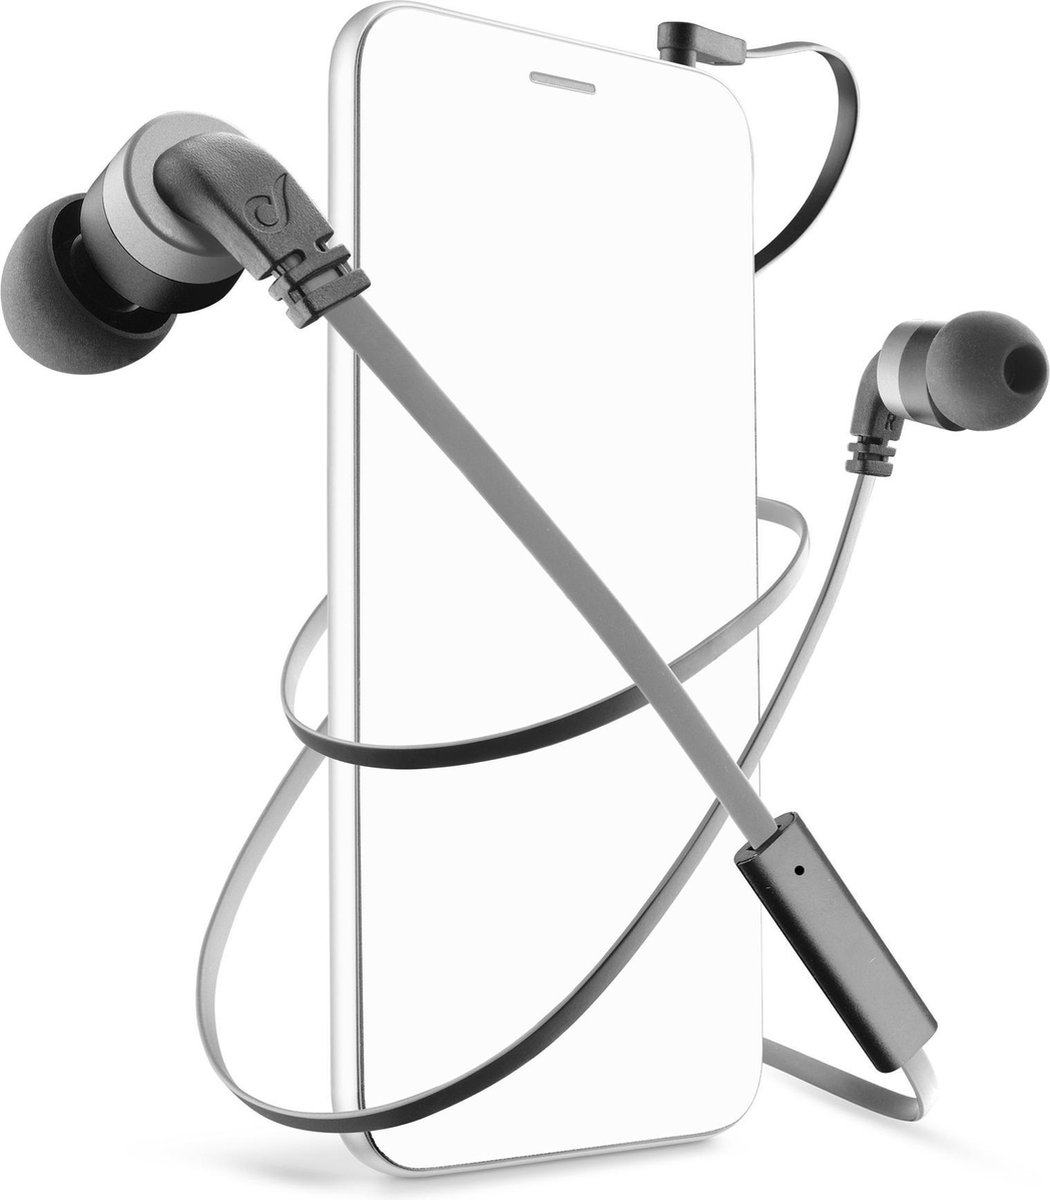 hoofdtelefoon inner-ear smartphone zwart grijs